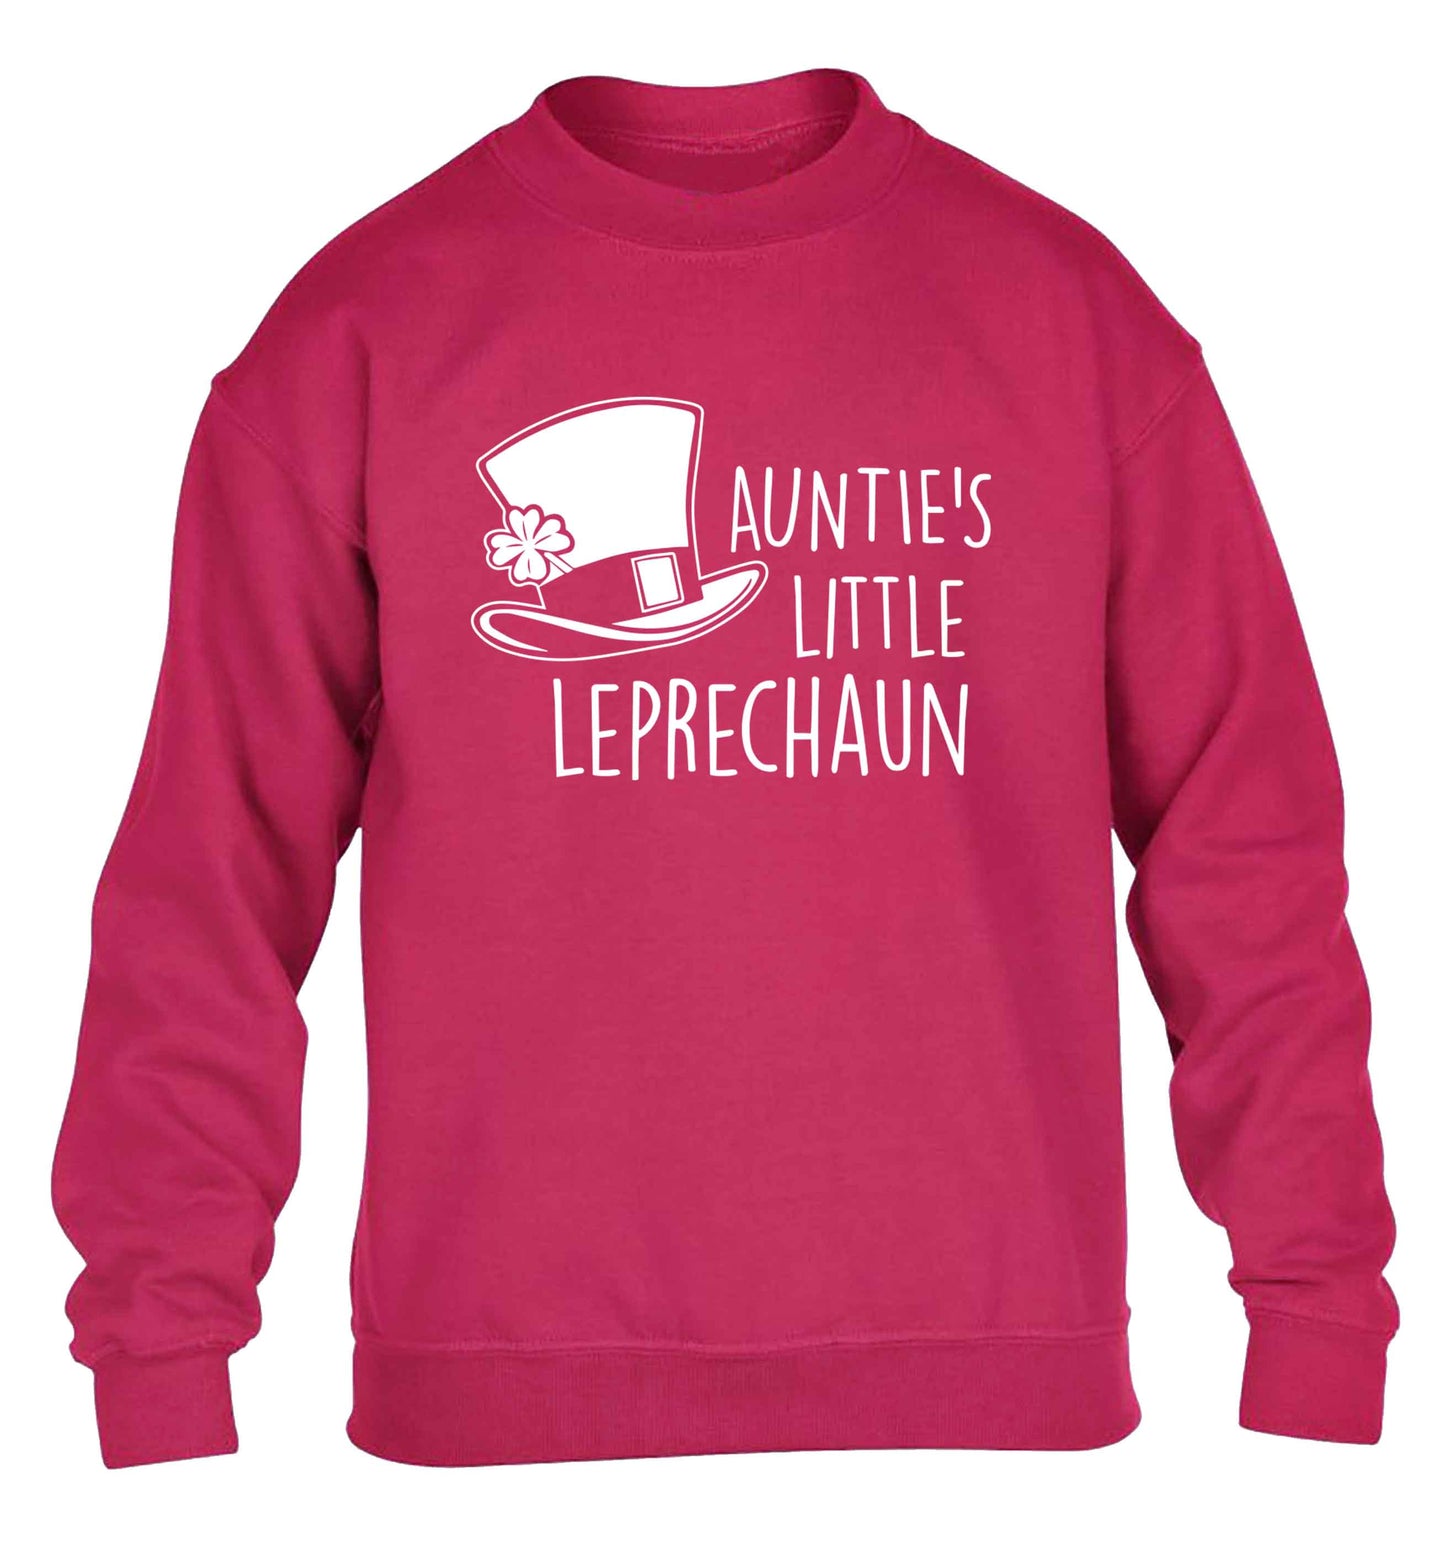 Auntie's little leprechaun children's pink sweater 12-13 Years